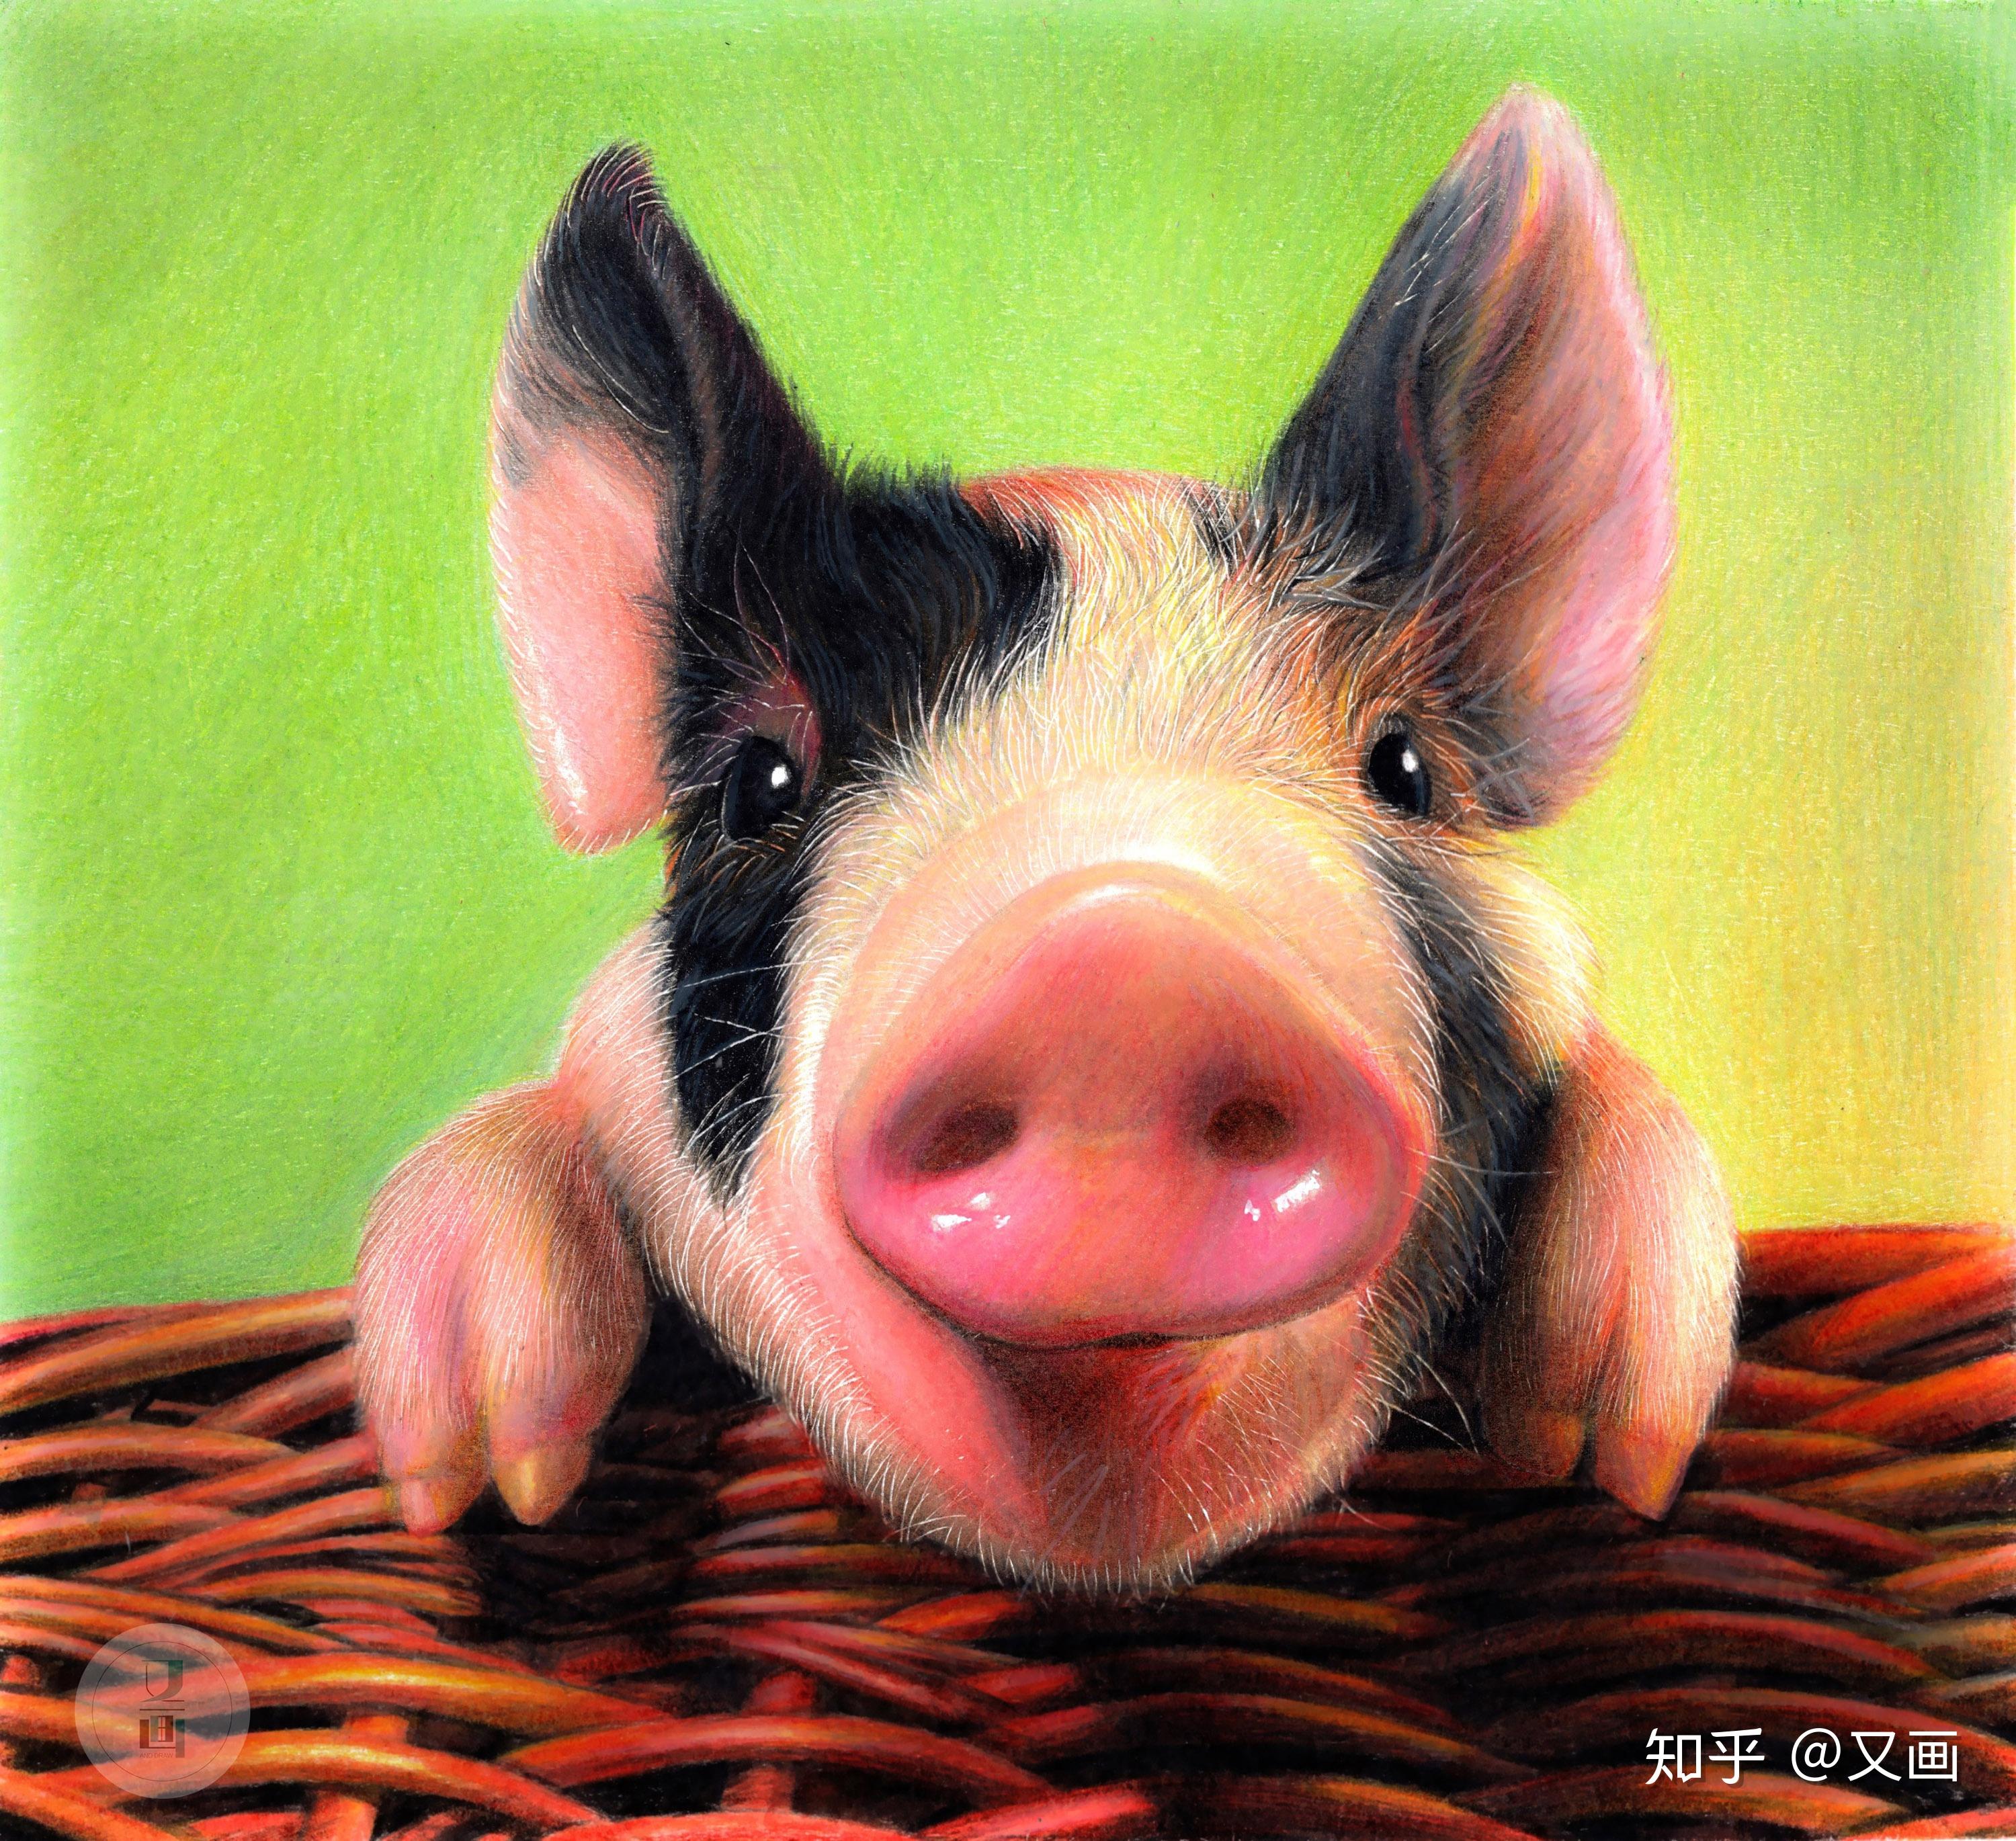 彩铅教程画2019年的第一头猪